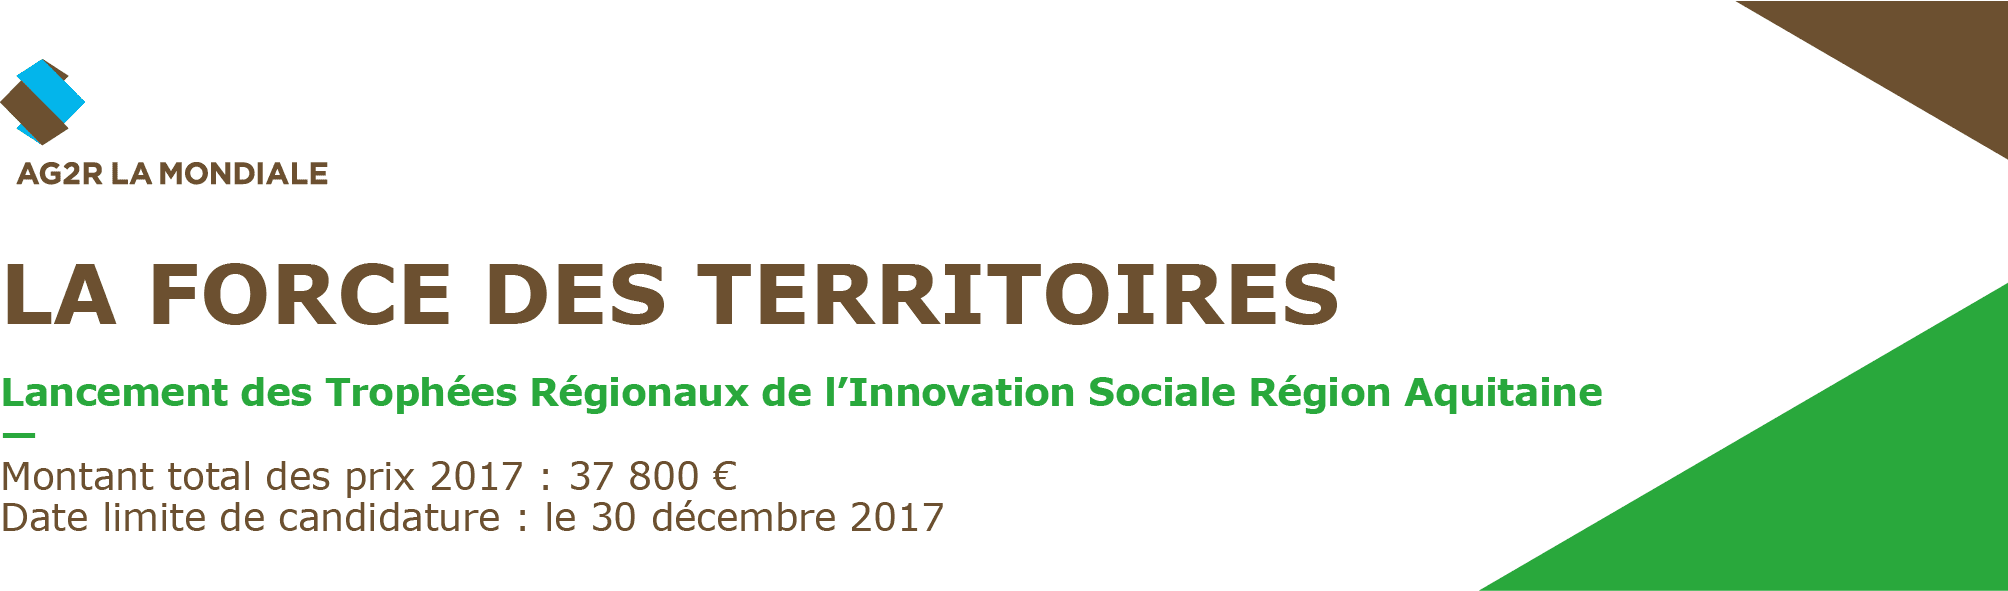 Trophées Régionaux de l'innovation sociale 2017 Aquitaine